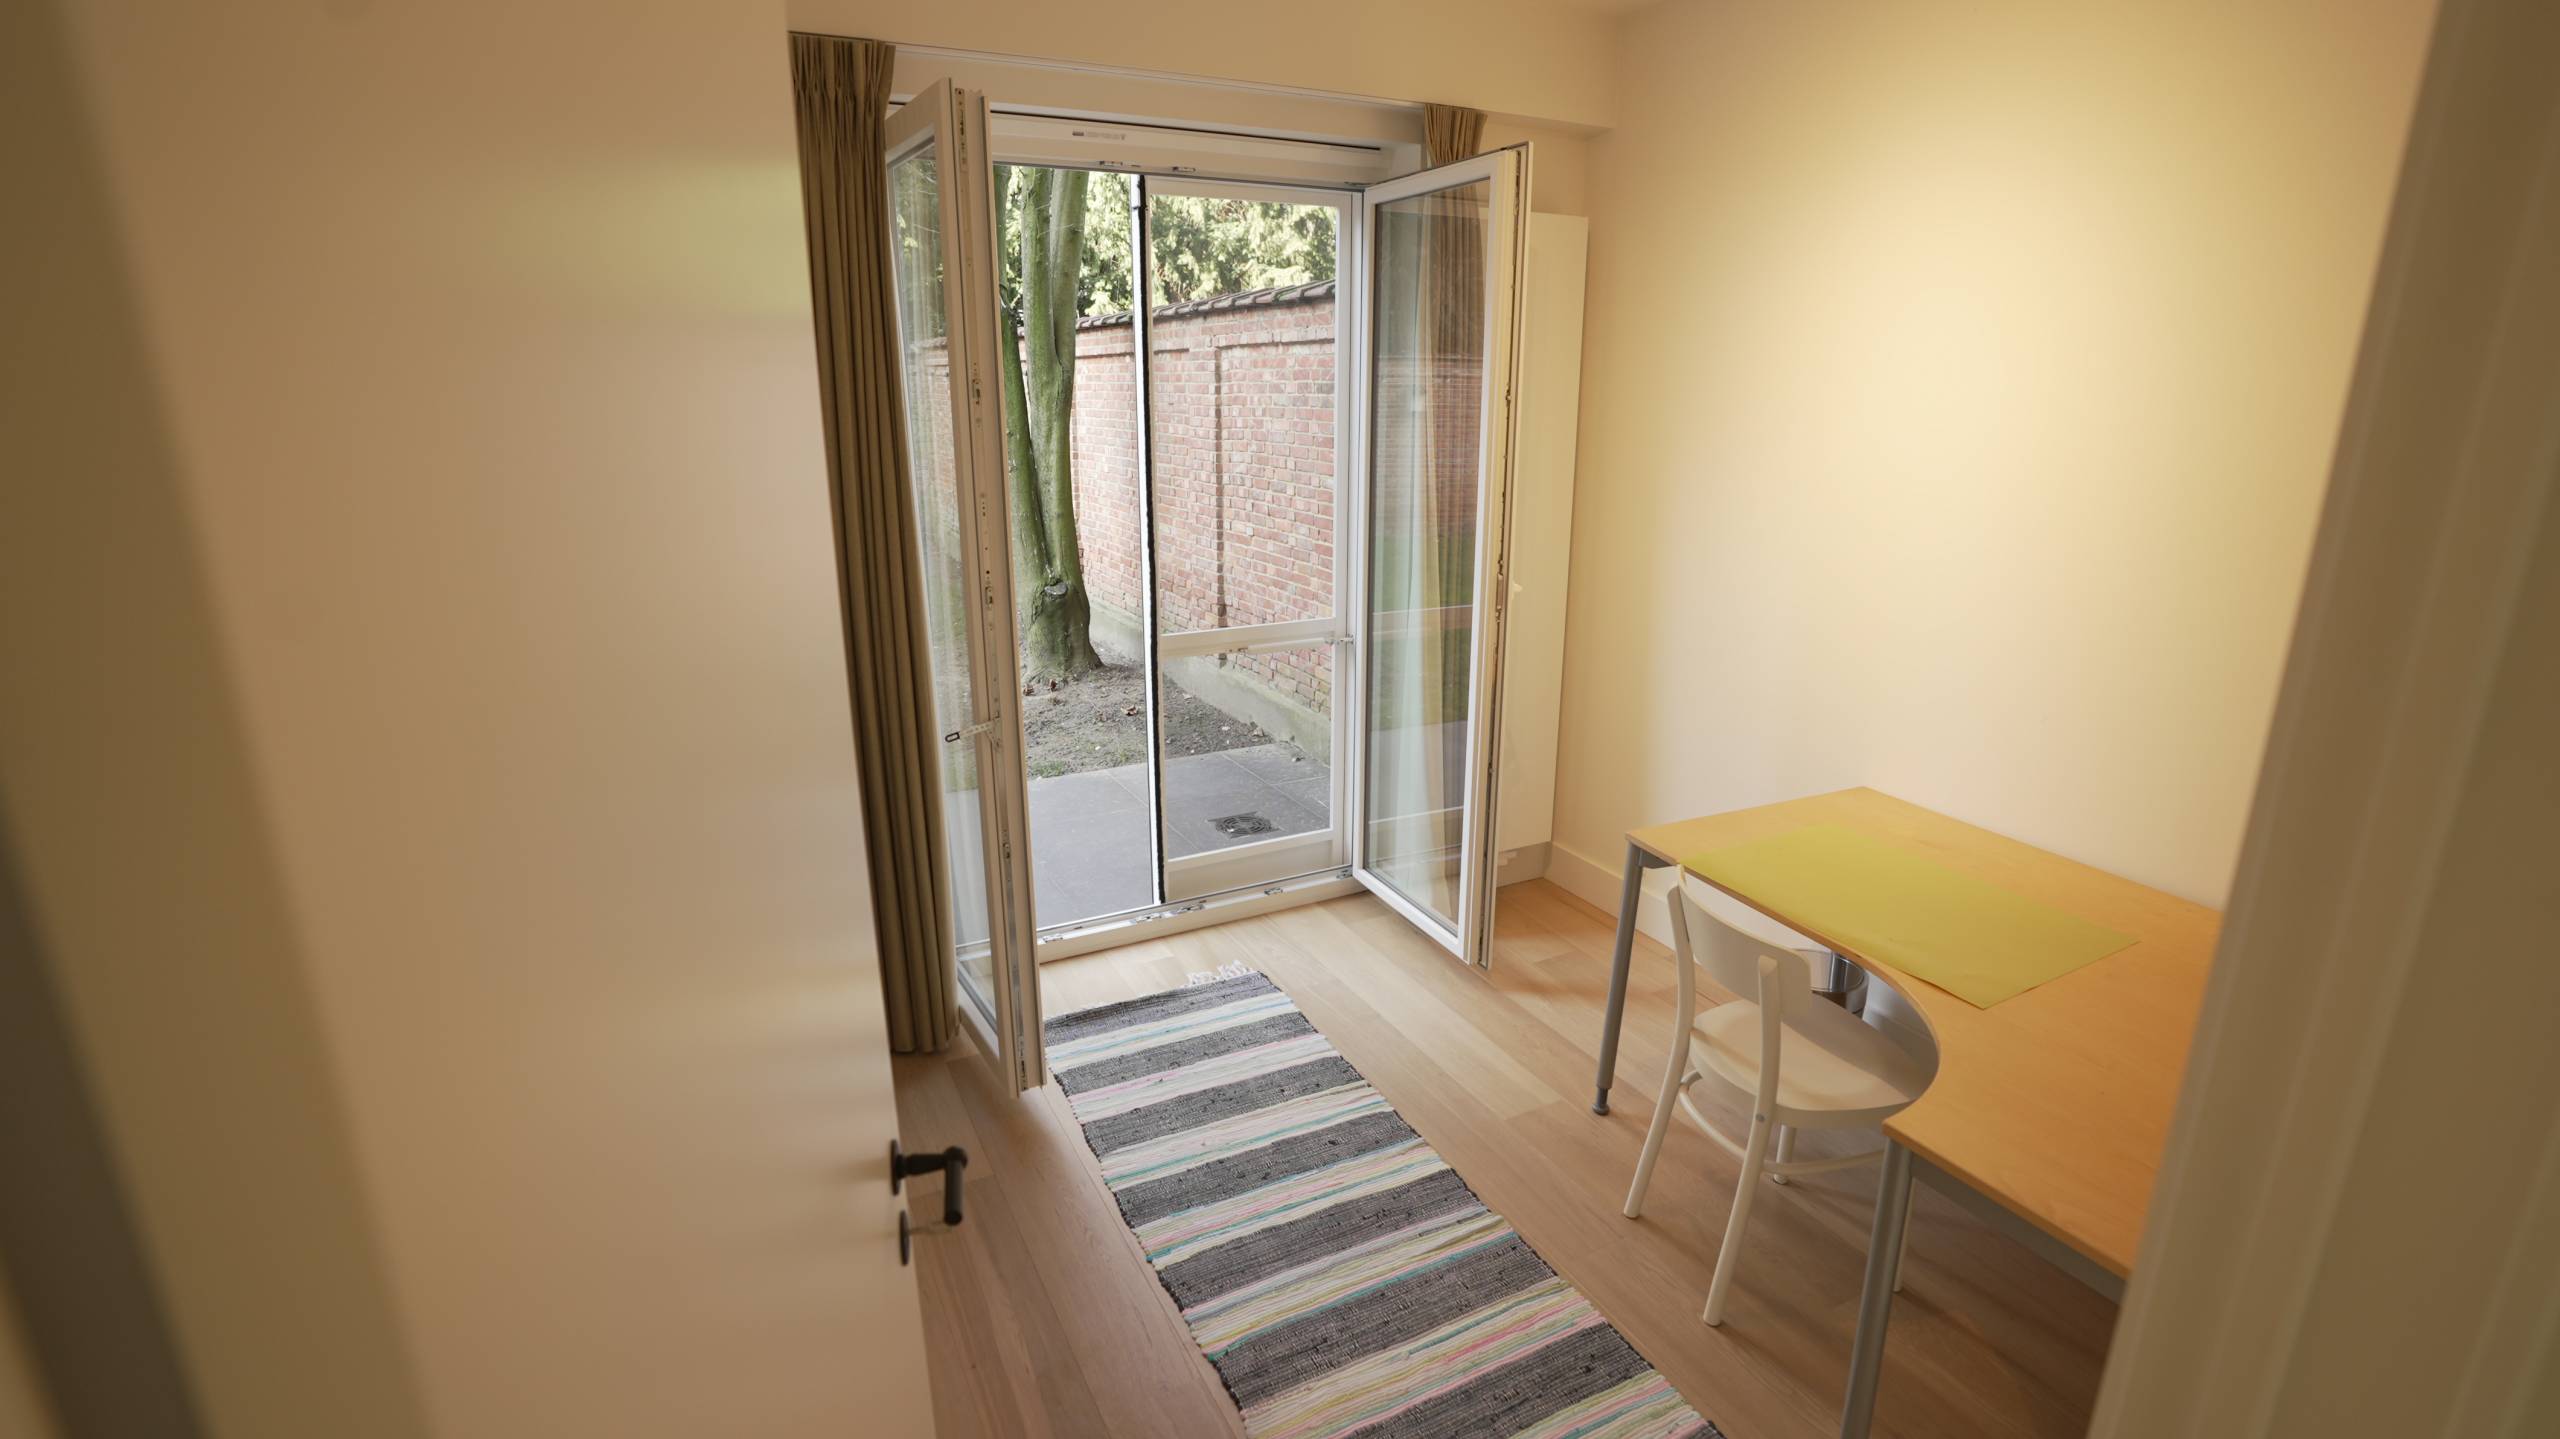 Onafhankelijk - Furnished apartment for expats in Antwerp